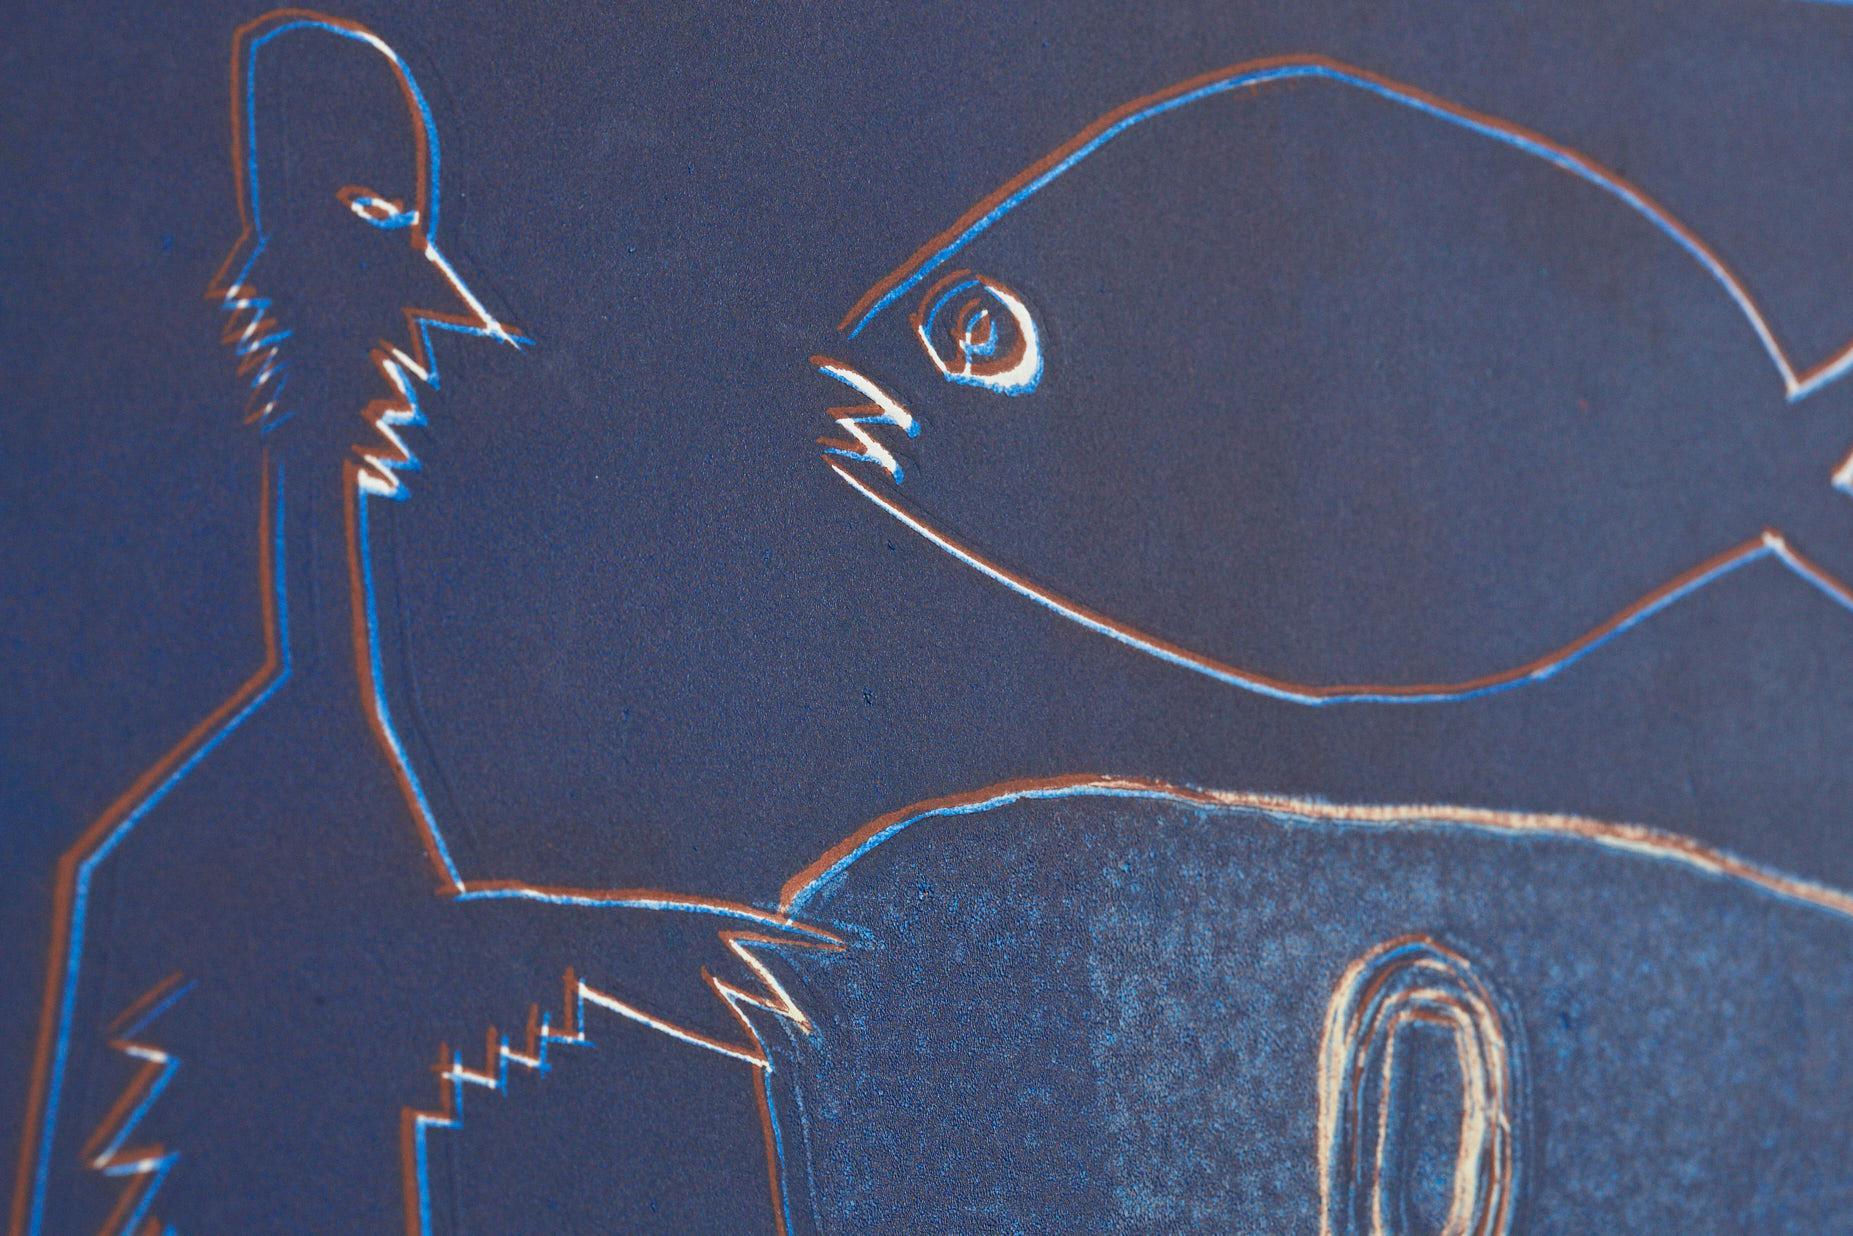 Wyona Diskin, Amerikanerin (1915 - 1991)
Blauer Mann mit Fisch
Monoprint, signiert auf der Rückseite unten links. Ungerahmt.

Auf dem weißen Teil des Randes befinden sich noch Farbreste vom Druck, siehe Detailfotos.

Wyona Diskins abstrakte